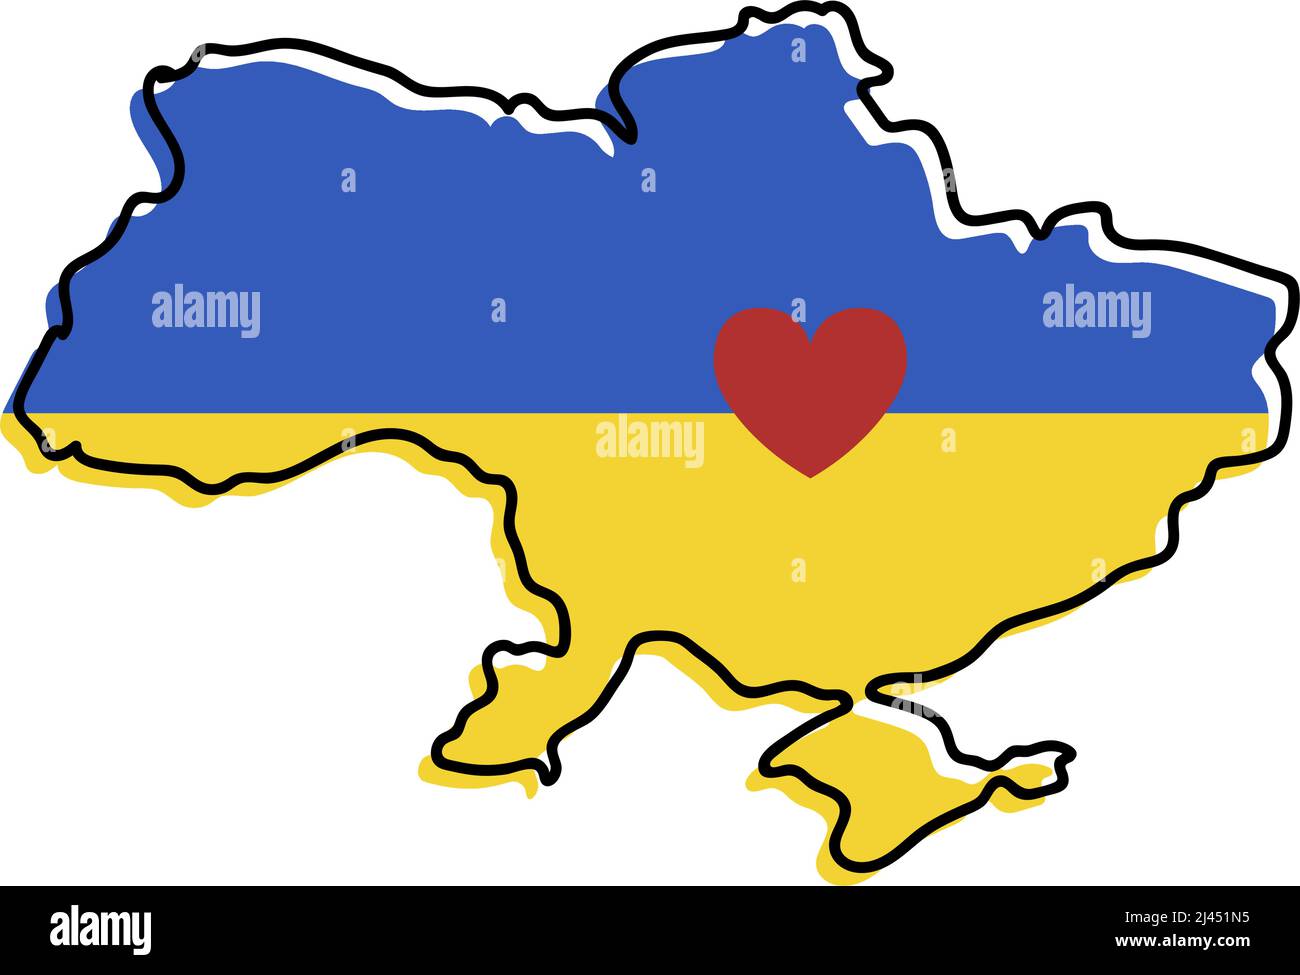 Stop war in Ukraine Konzept Vektor-Illustration. Herz, Liebe zur Ukraine, ukrainische Flagge und Kartendarstellung. Rette die Ukraine vor Russland. Stock Vektor